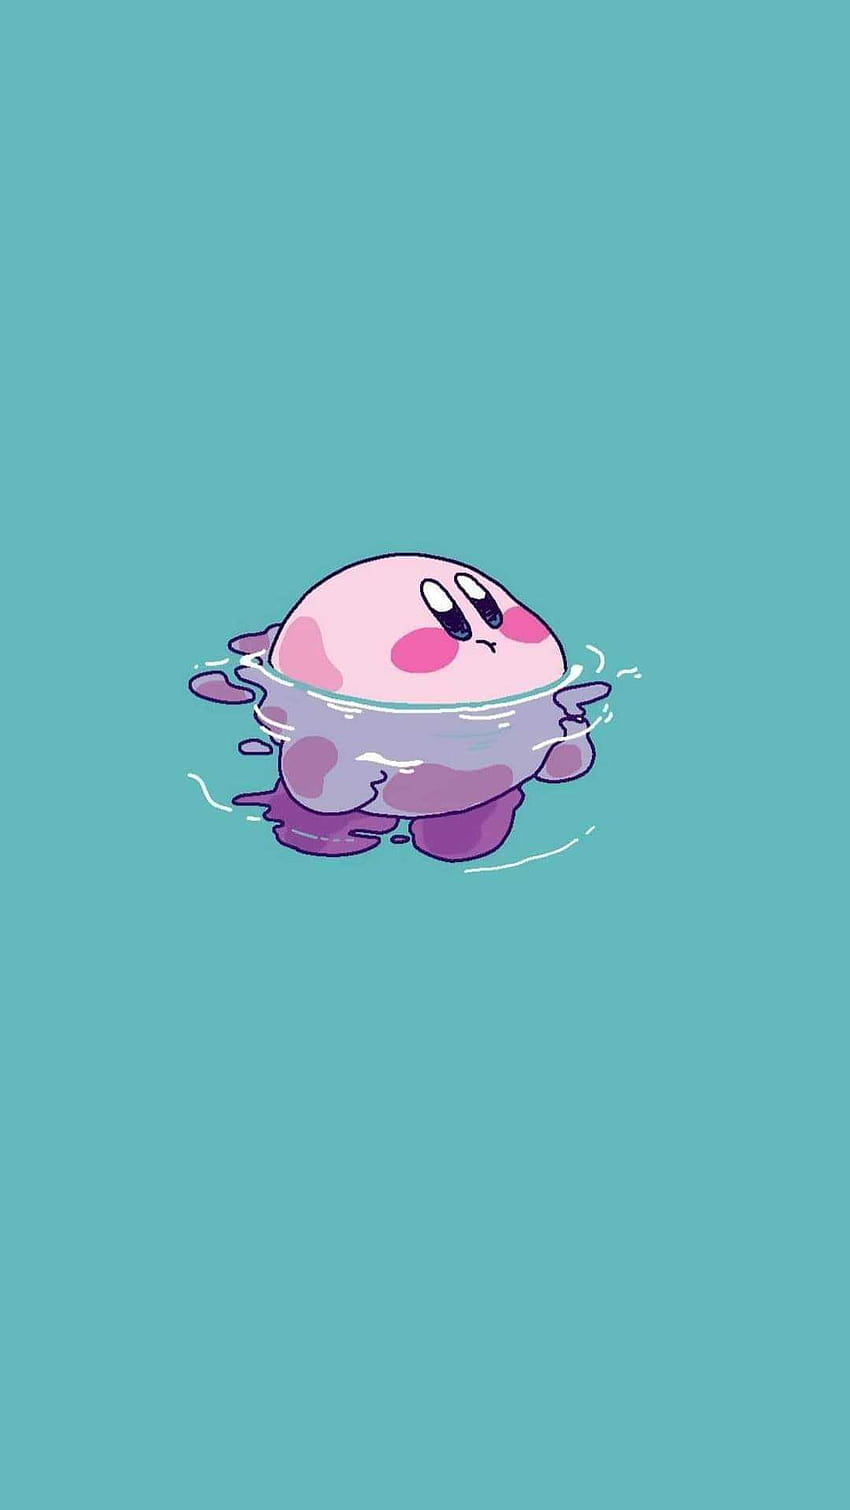 Hình nền điện thoại Kirby sẽ khiến điện thoại của bạn trở nên độc đáo và thu hút hơn bao giờ hết! Những hình ảnh đầy màu sắc và vui nhộn sẽ đem đến cho bạn cảm giác thư giãn và vui vẻ.